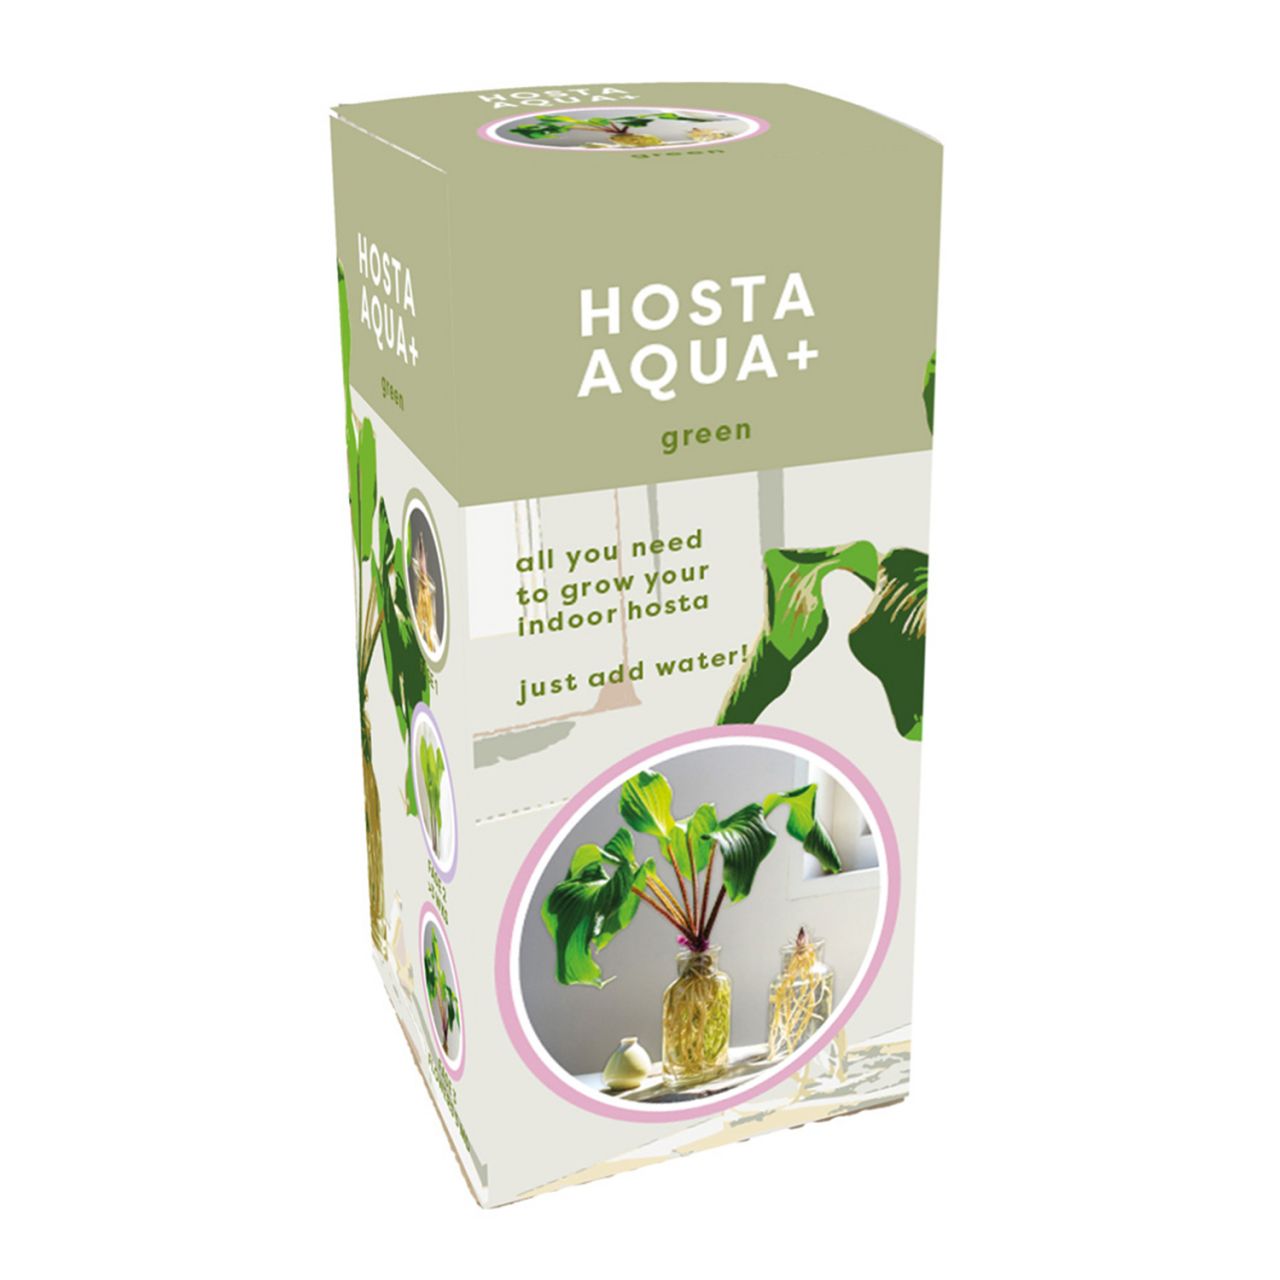 Kategorie <b>Stauden </b> - Grüne Hosta im Glas - Hosta Aqua + Green - with glass